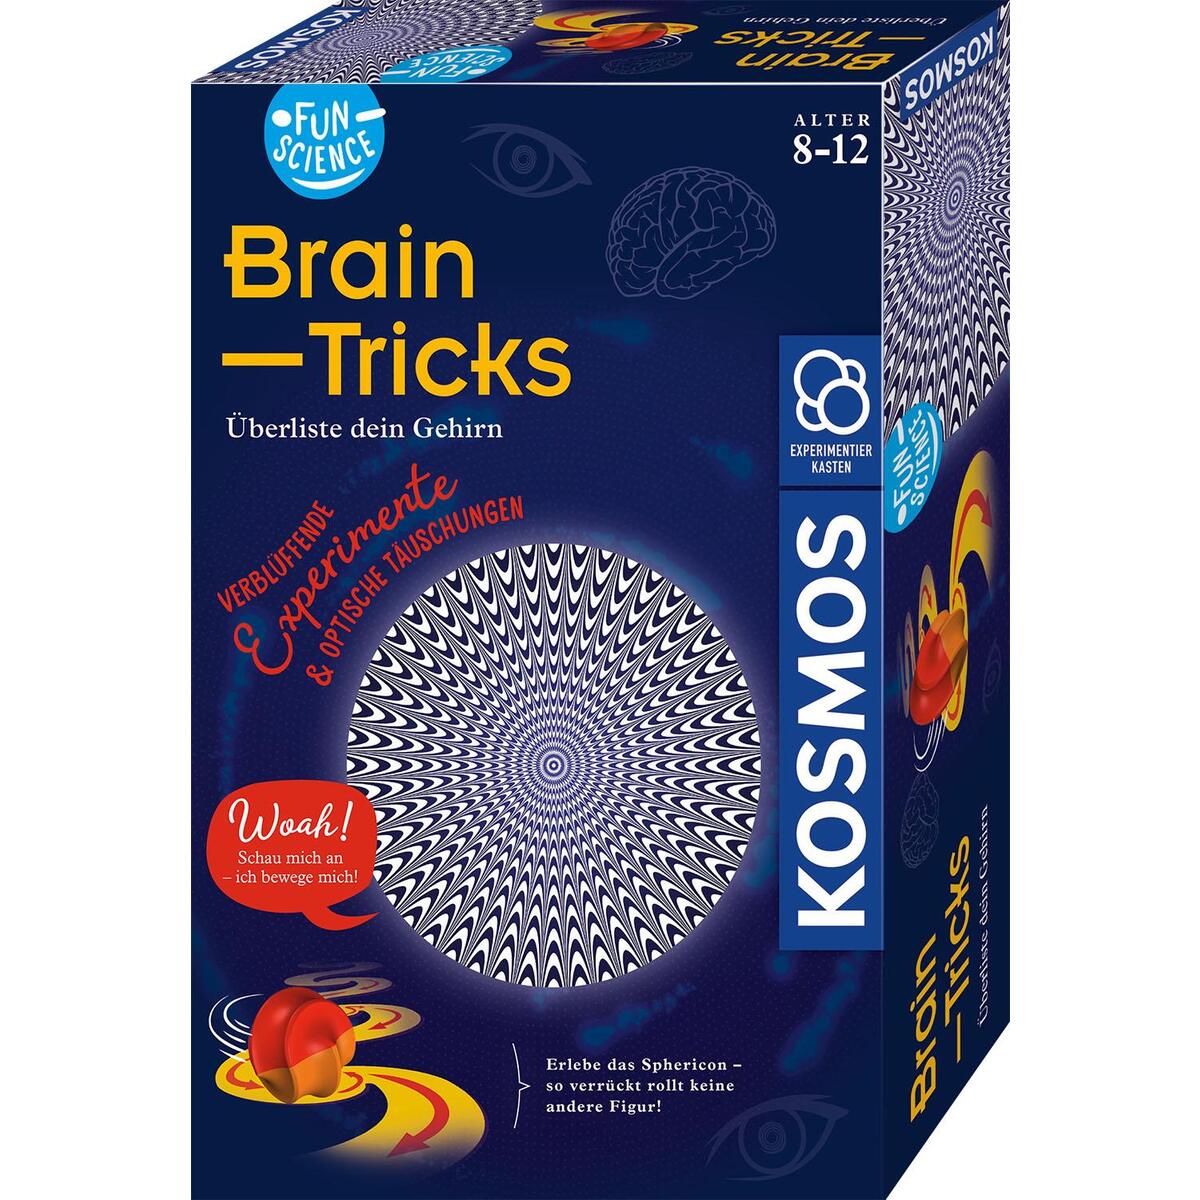 Fun Science »Brain-Tricks« von Franckh-Kosmos